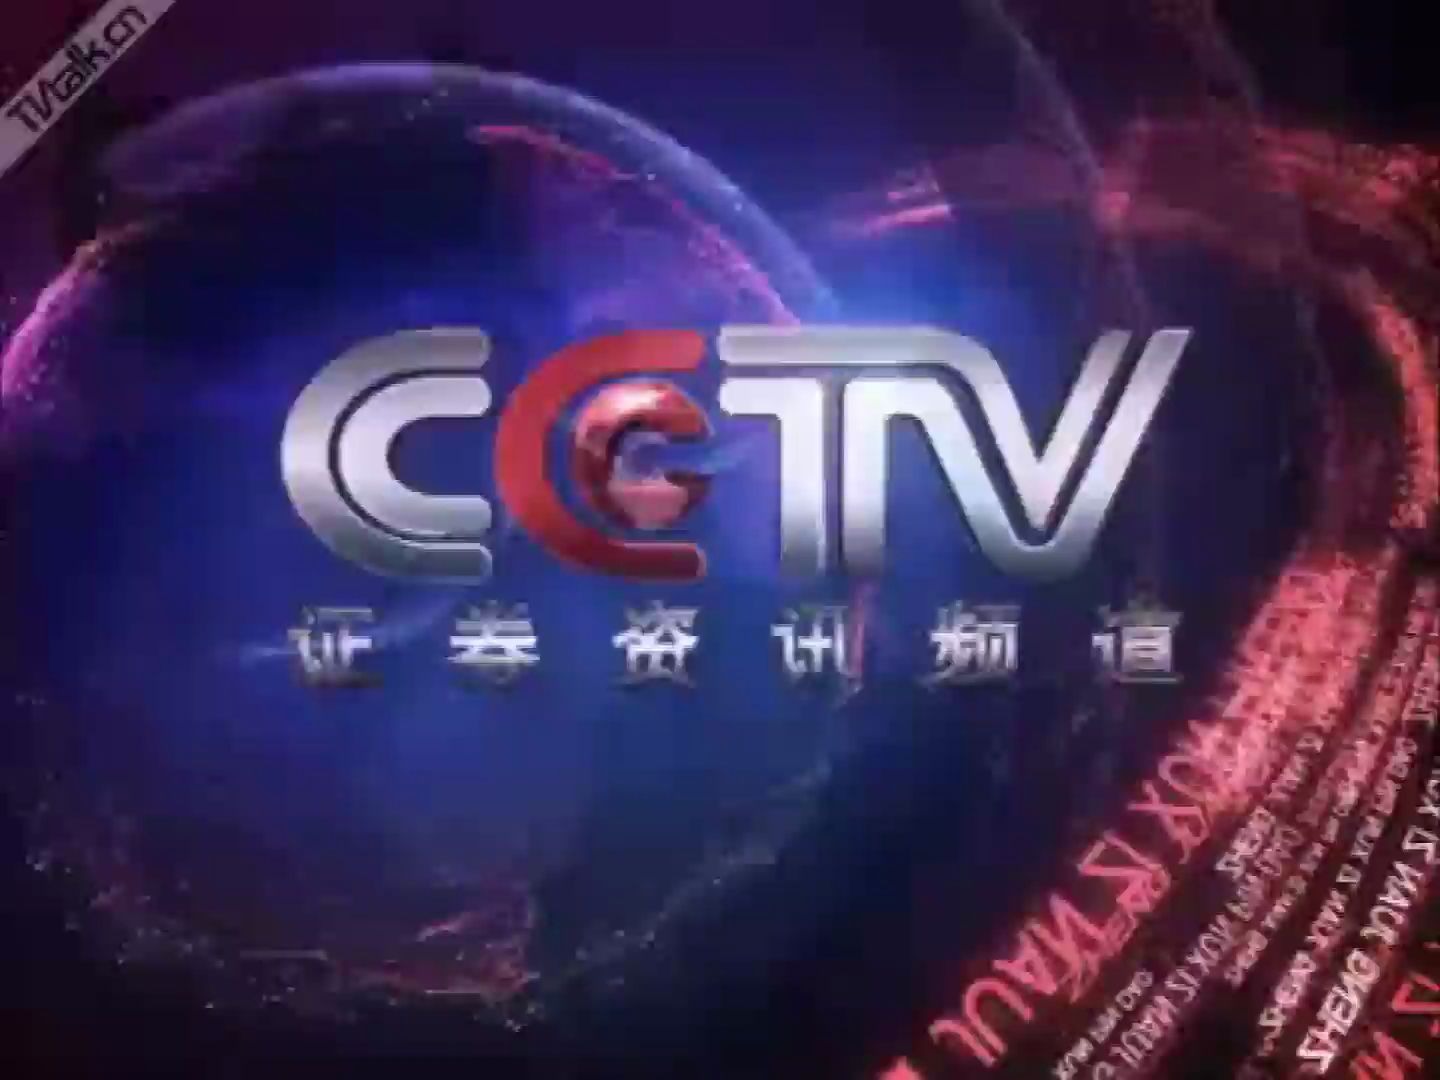 放送文化cctv证券资讯频道已停播整体包装制作方版